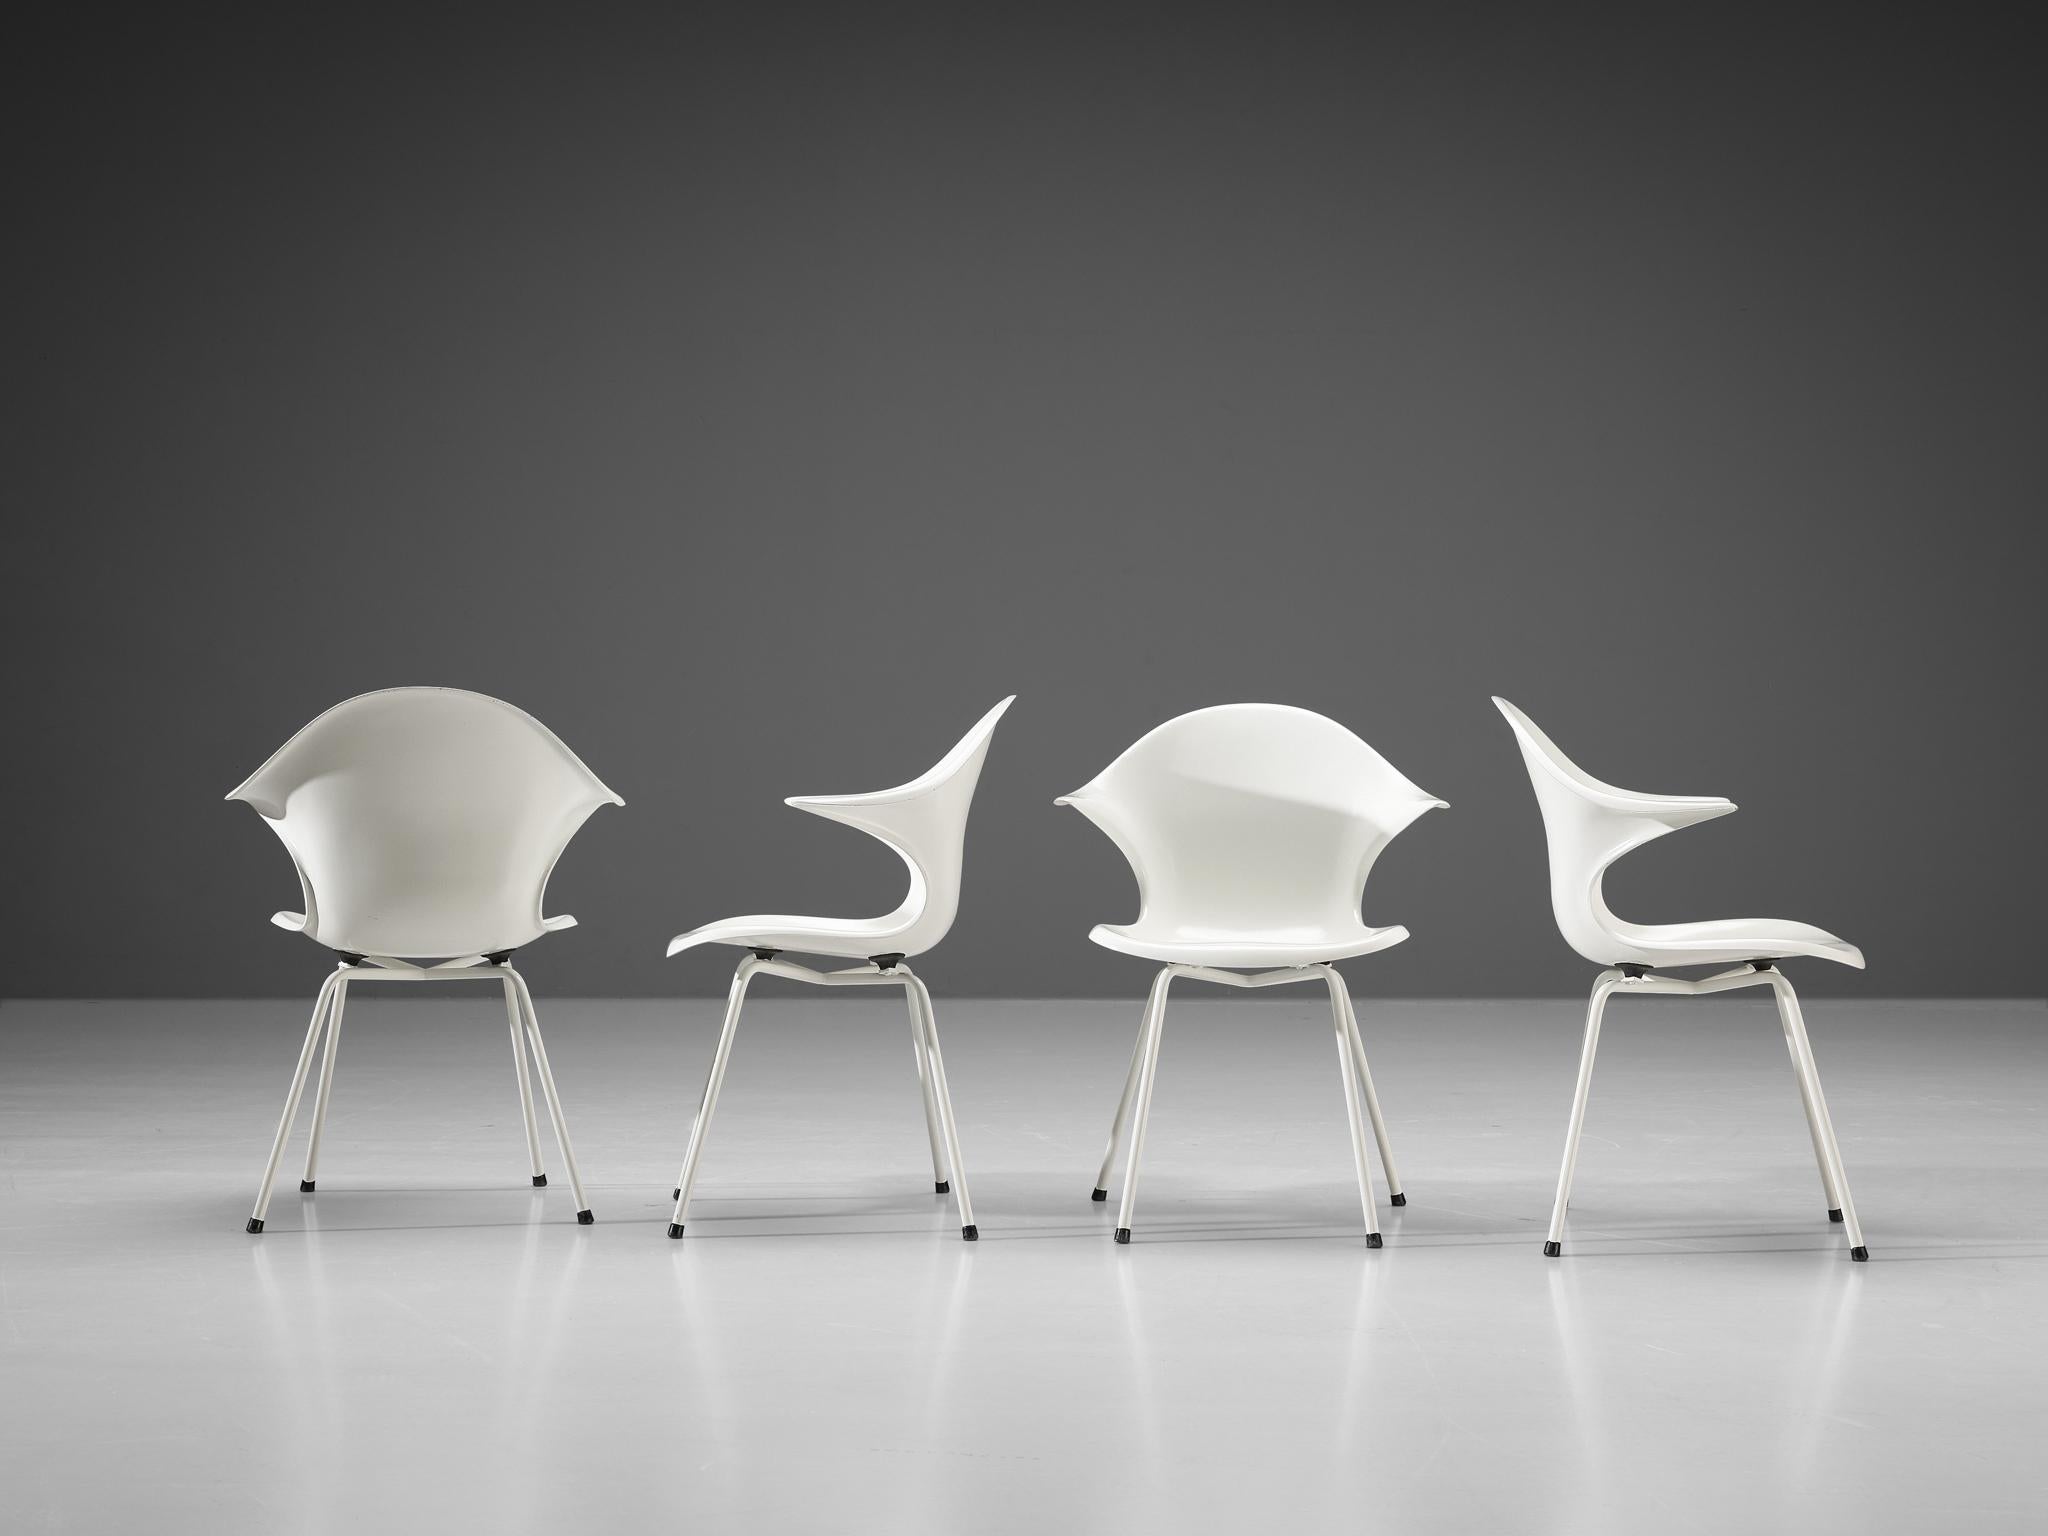 Satz von vier Sesseln aus Metall und Fiberglas, Italien 1960er Jahre. 

Die Konstruktion der Stühle basiert auf einer Kombination von Kurven, Kanten und Spitzen, die schöne und interessante Linien schaffen. Durch die Verwendung von Fiberglas erhält